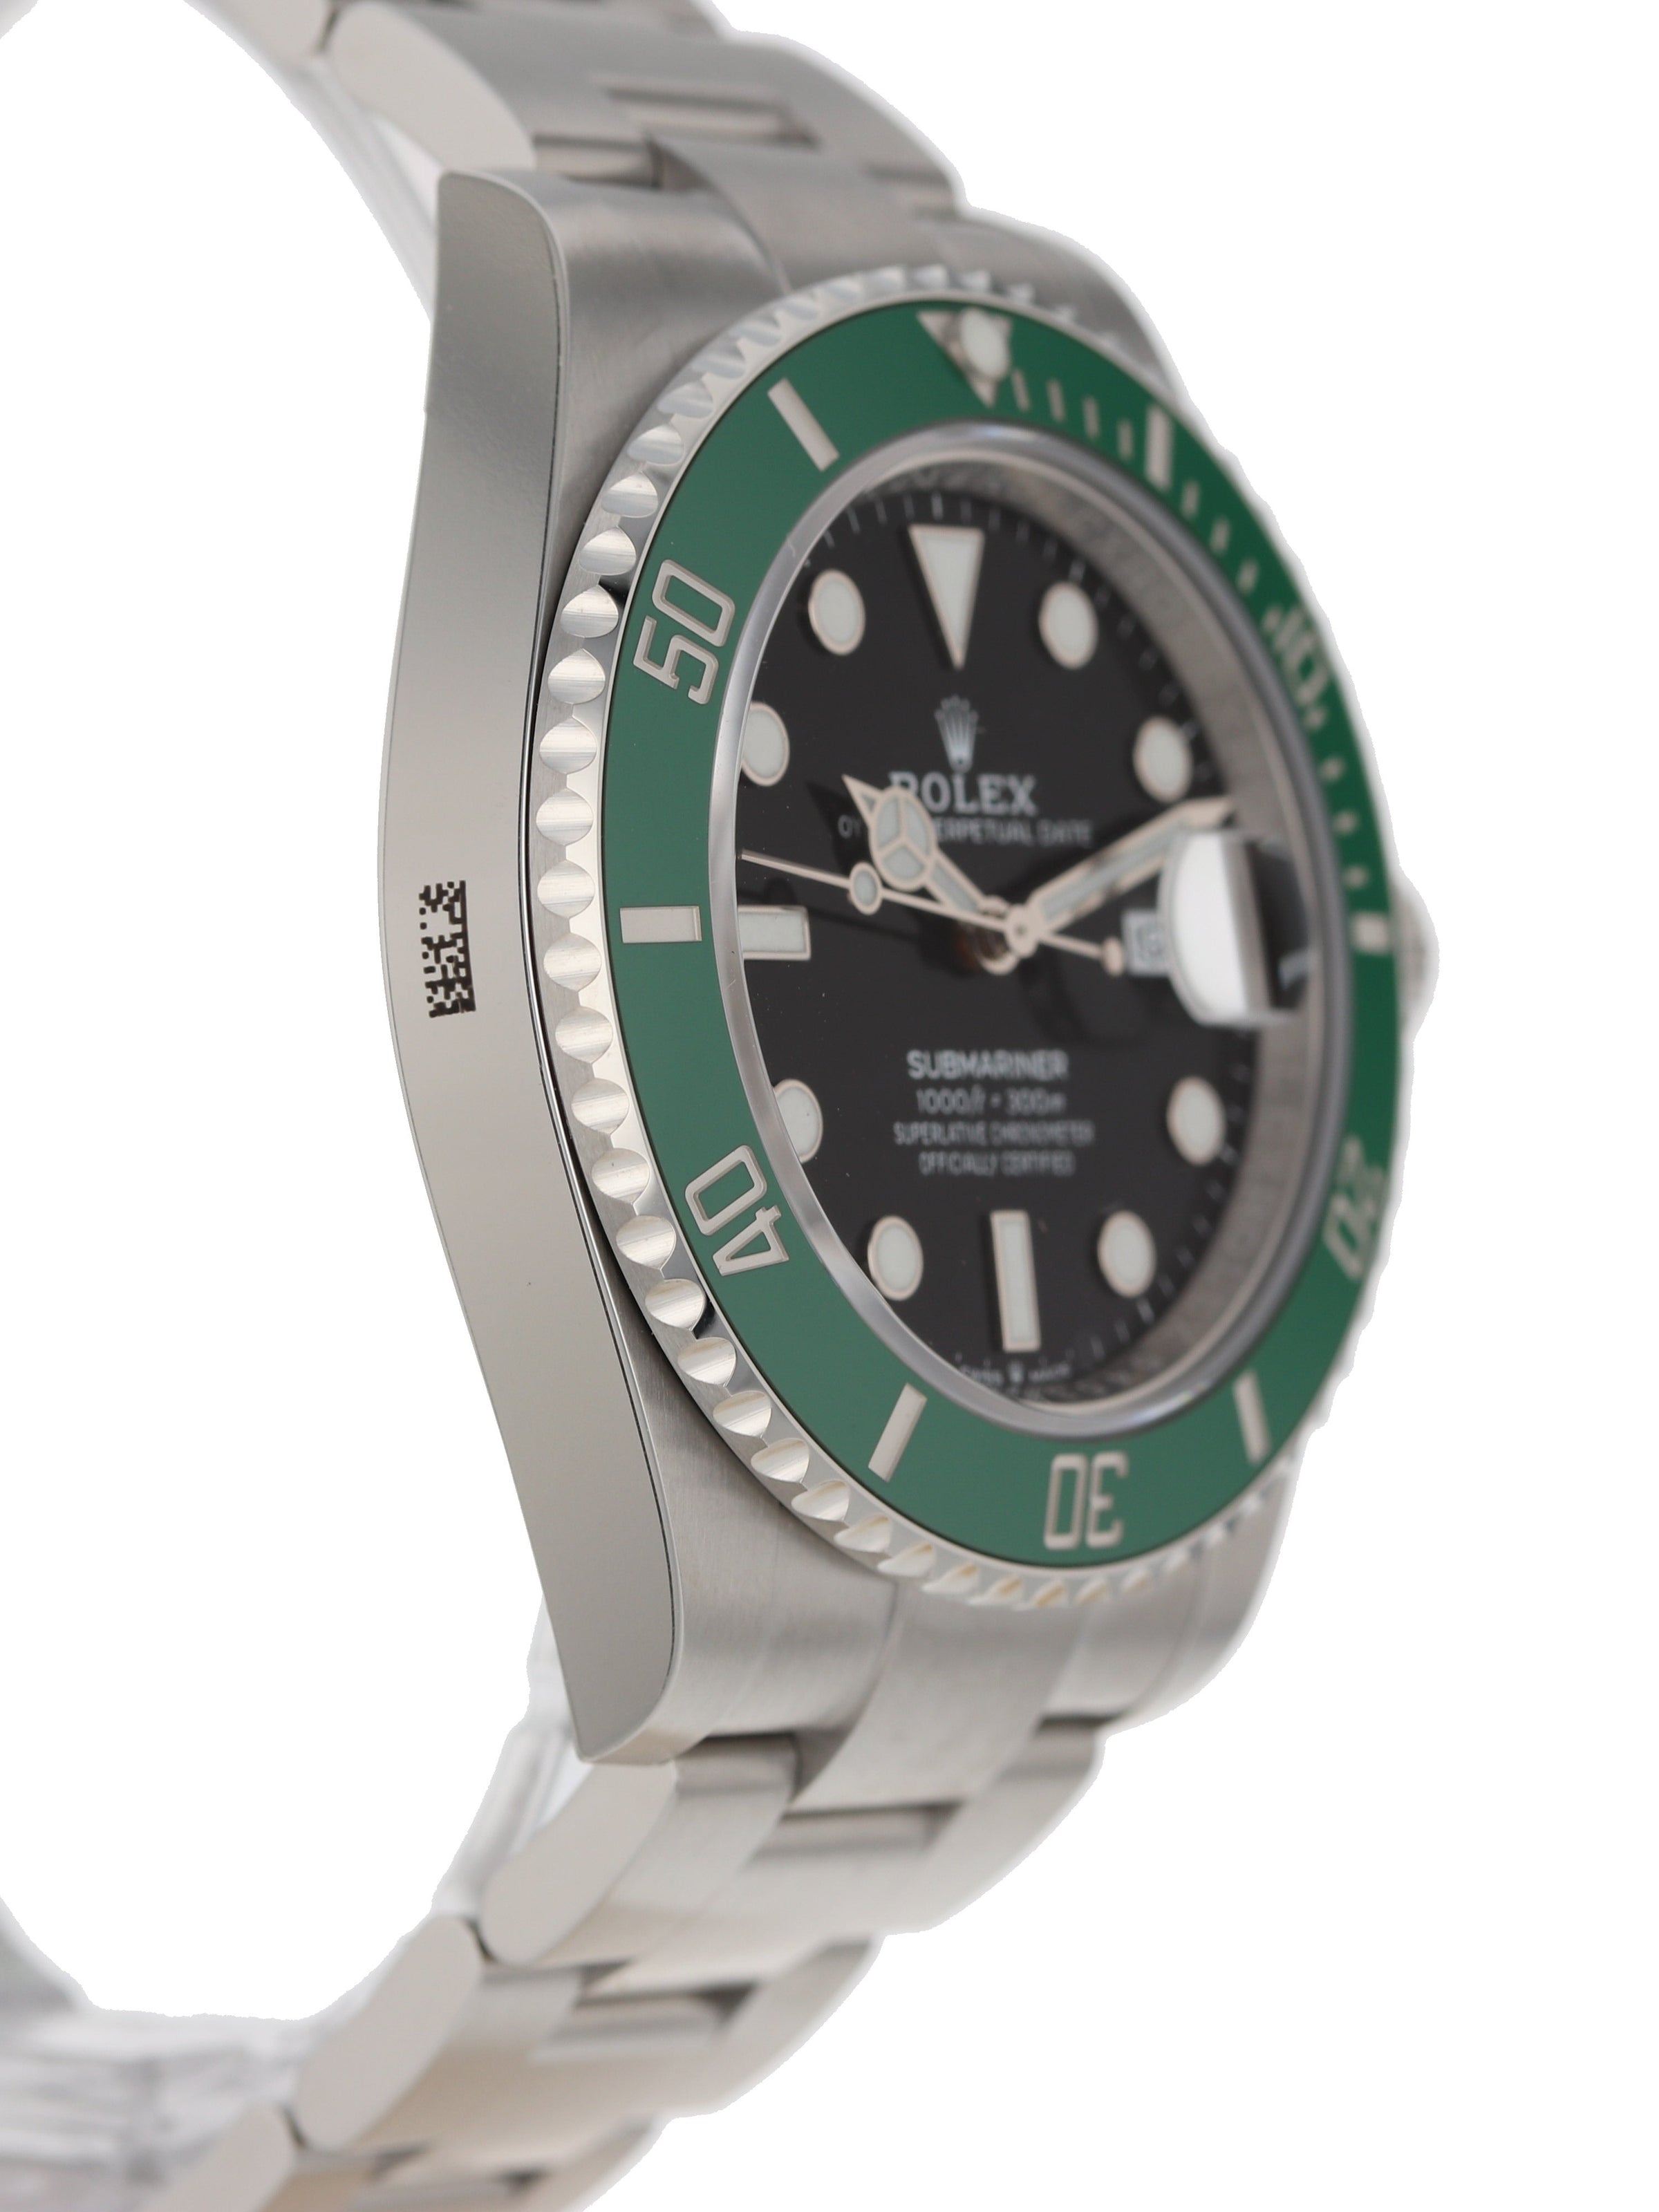 Rolex 126610LV SUBMARINER 41 GREEN BEZEL STARBUCKS WARRANTY COMPLETE SET -  Takuya Watches